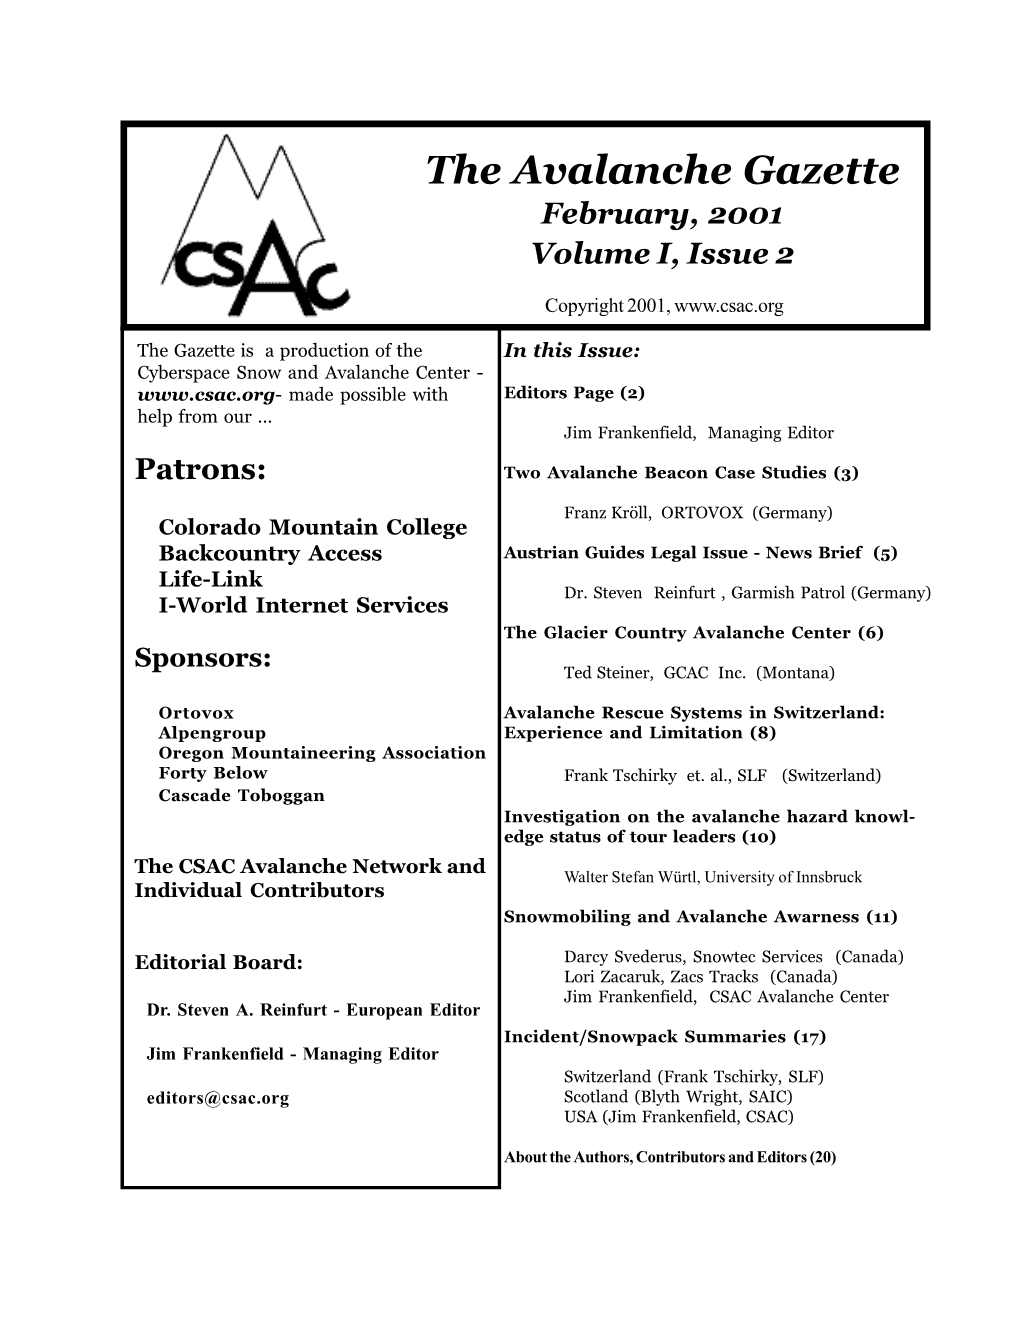 The Avalanche Gazette February, 2001 Volume I, Issue 2